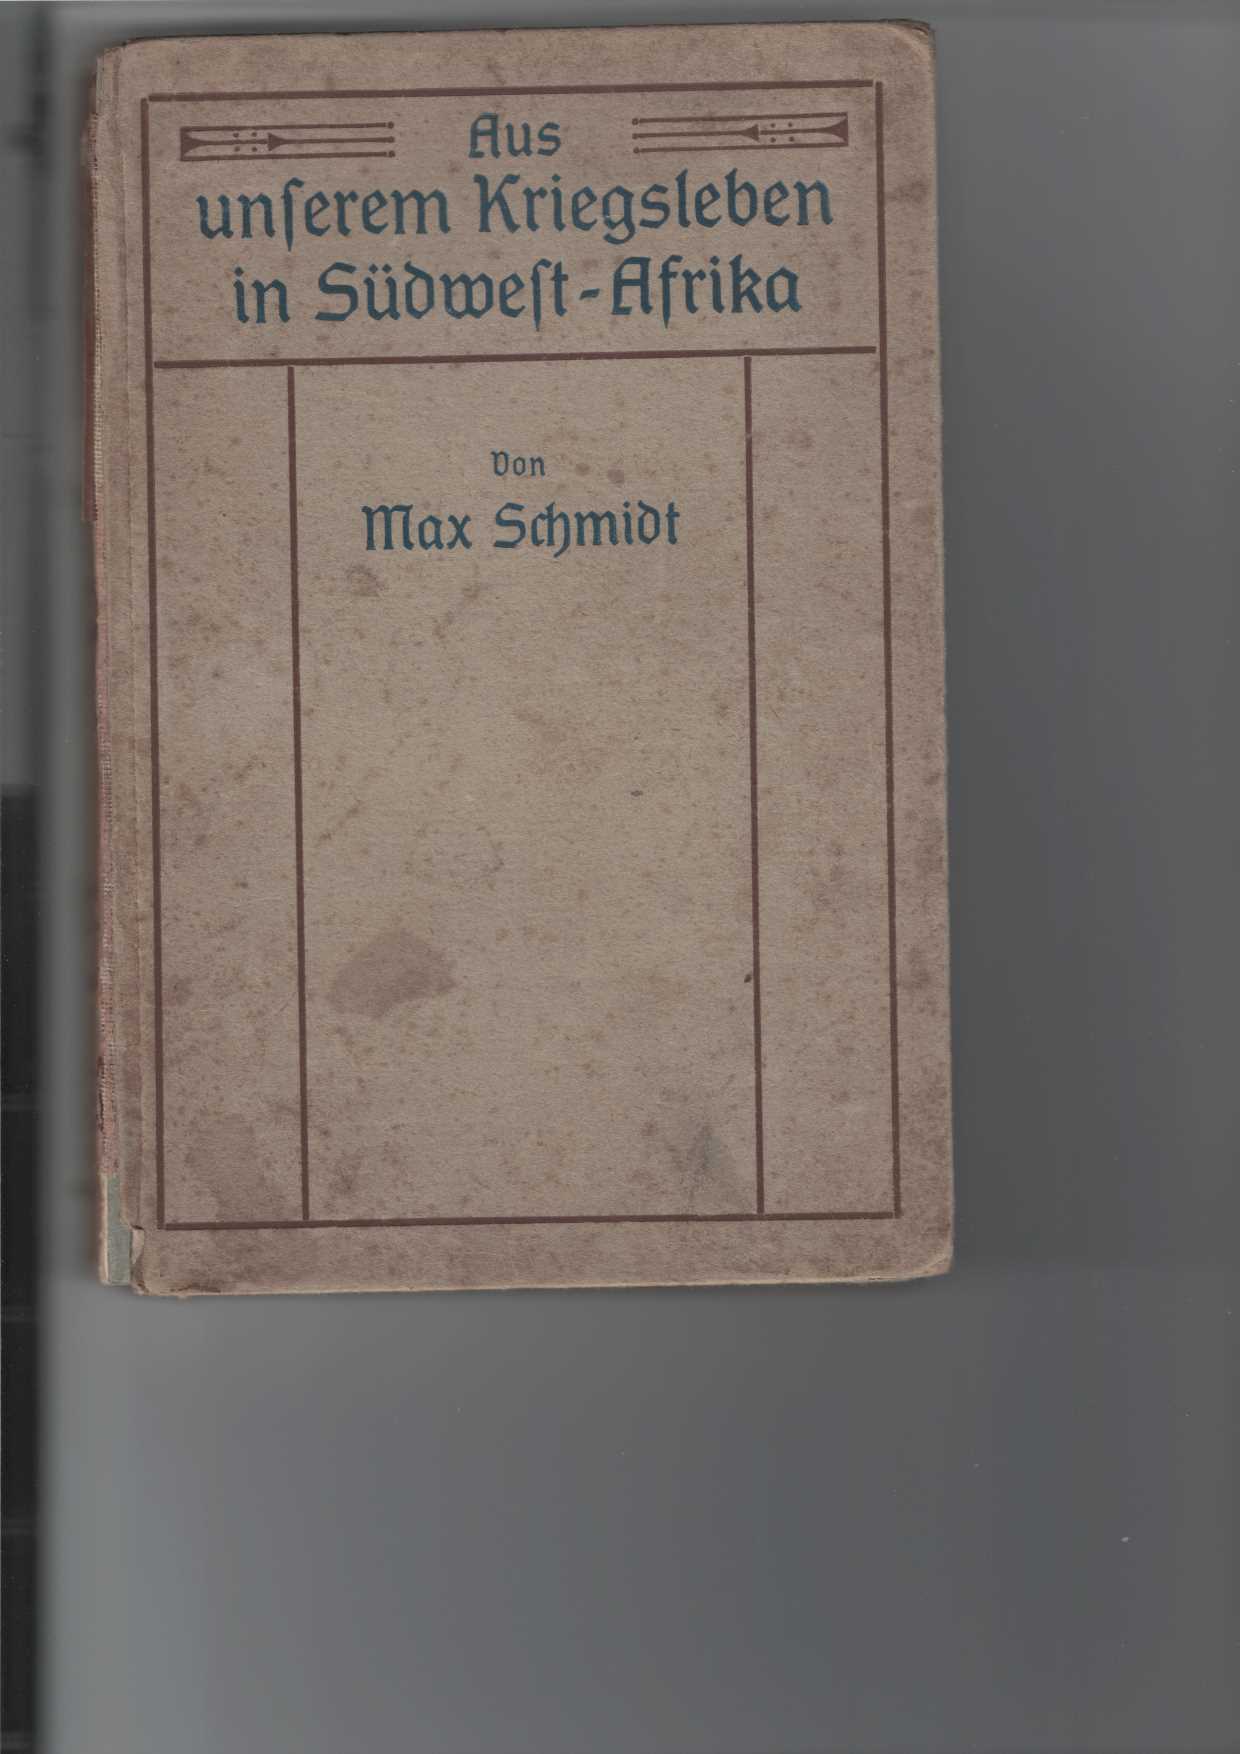 Schmidt, Max:  Aus unserem Kriegsleben in Sdwestafrika. 